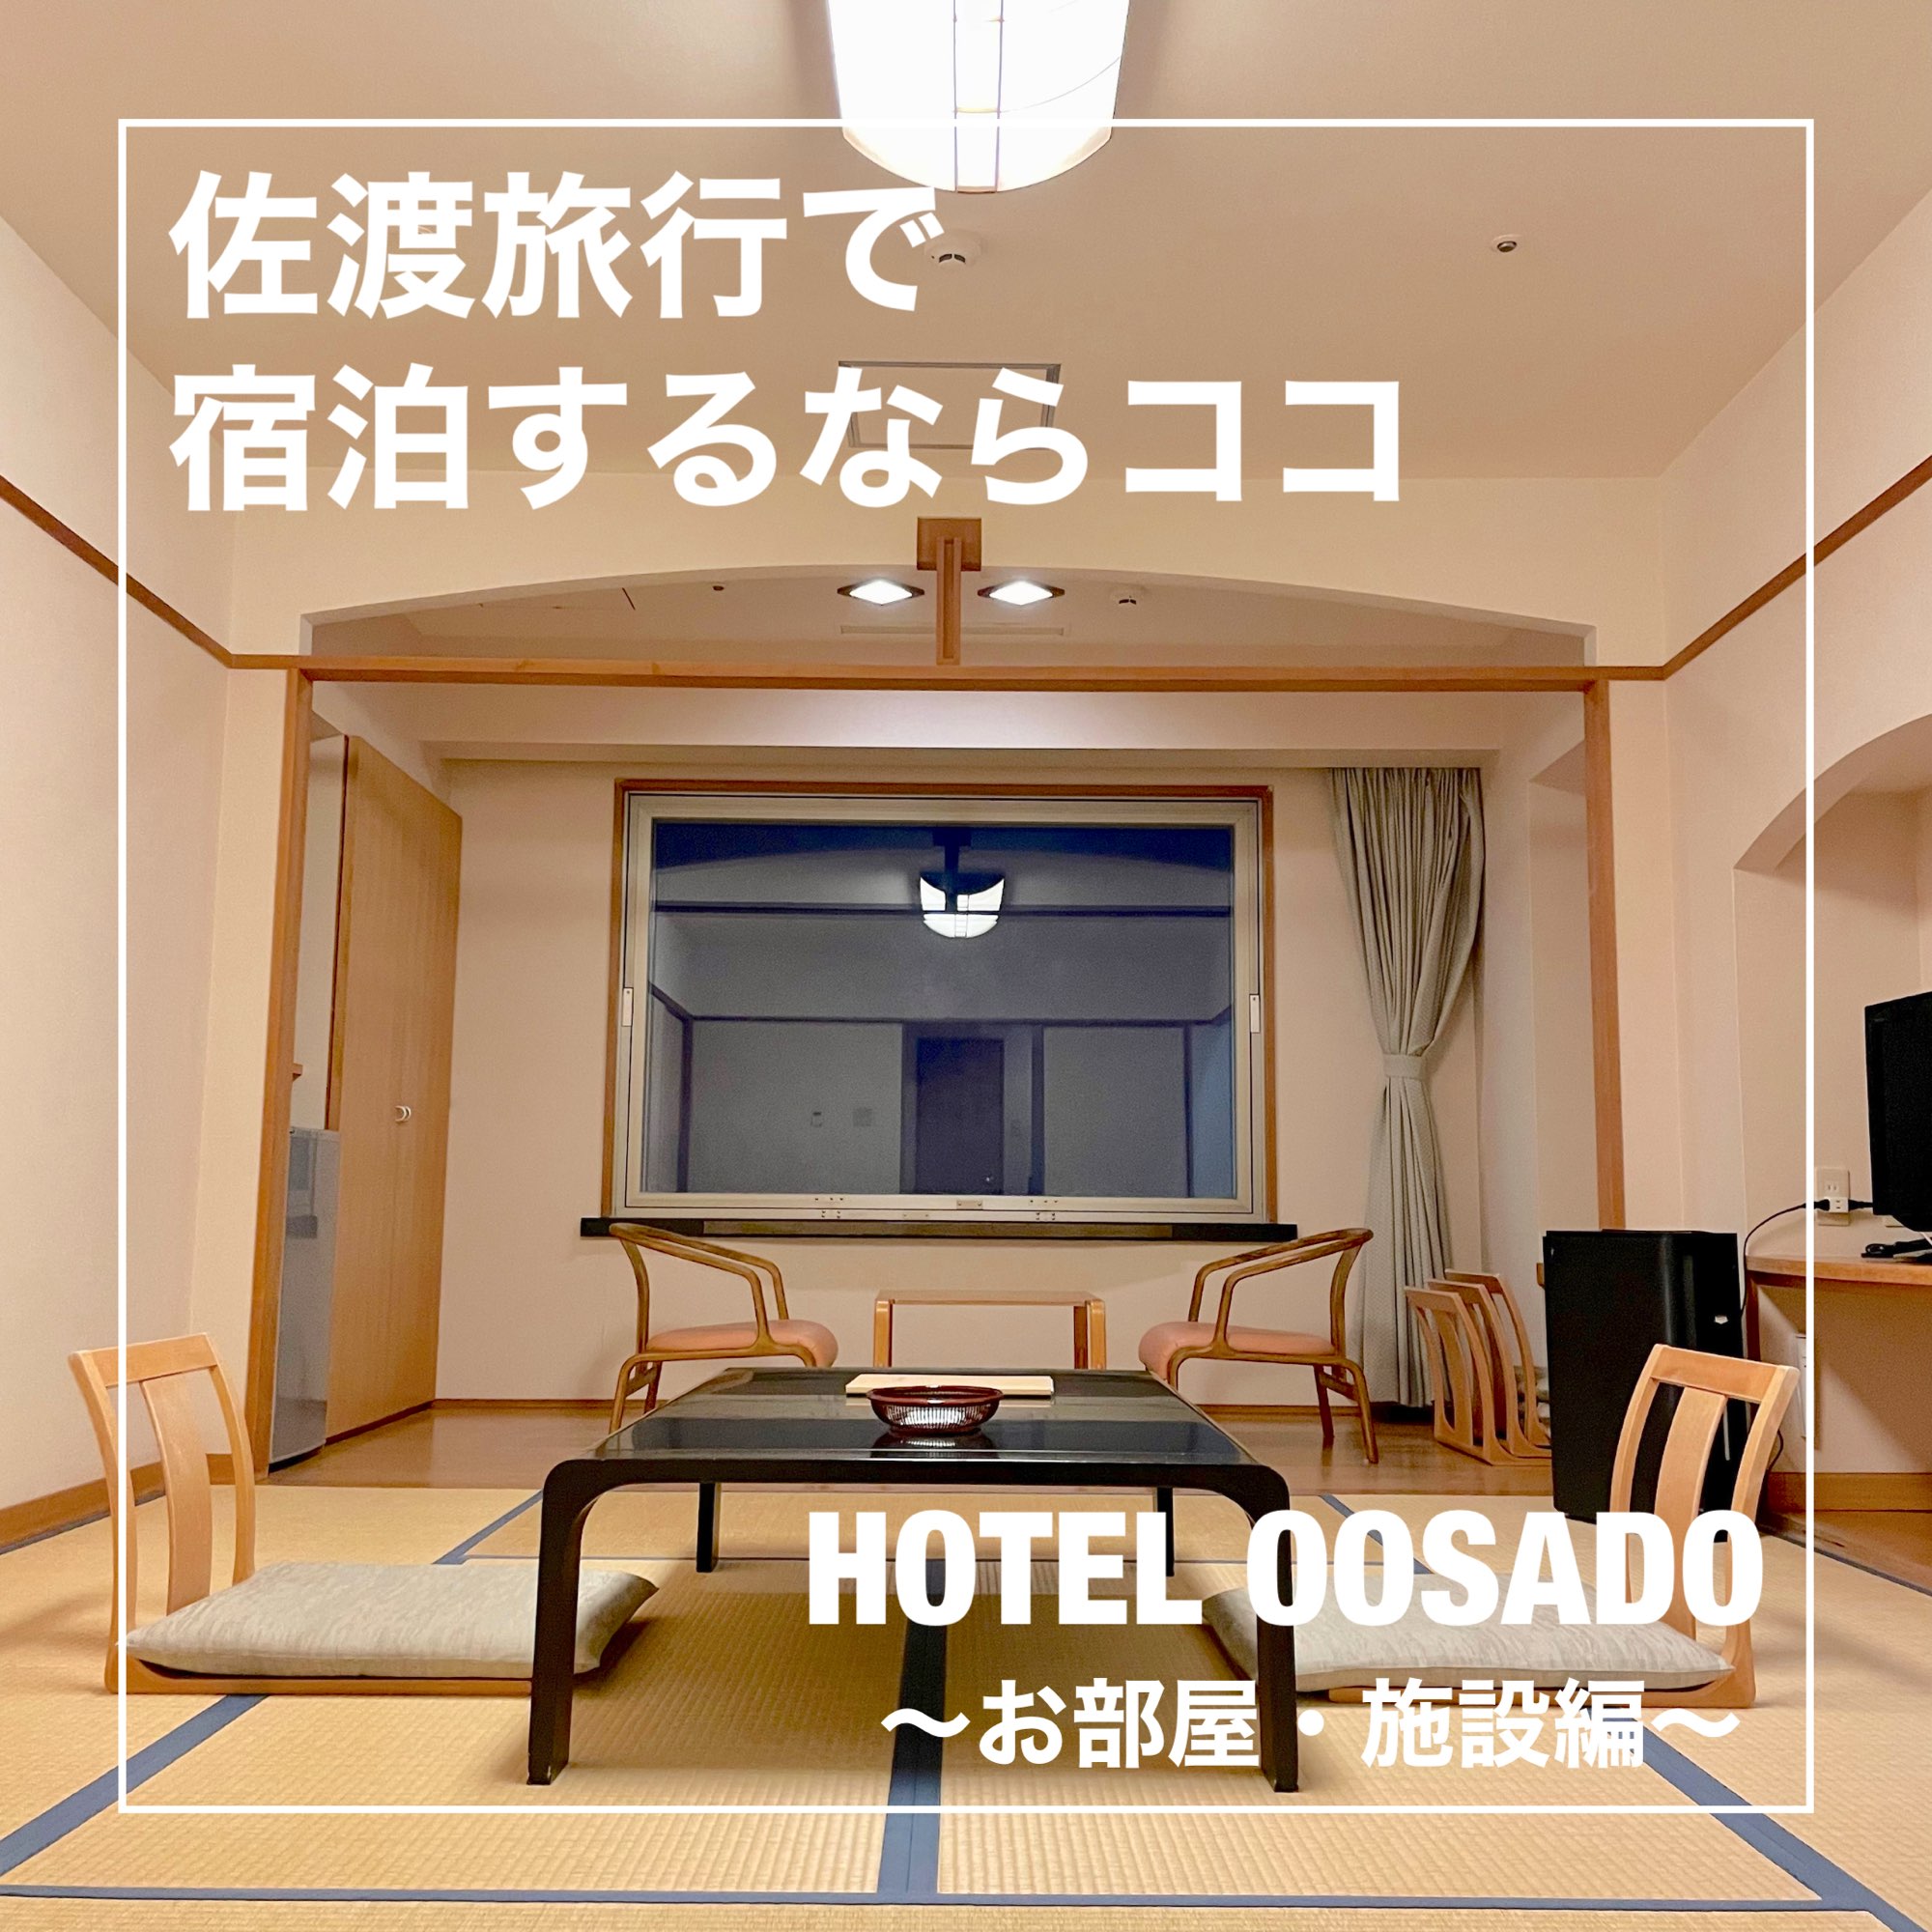 [新泻县]如果您想留在佐渡,请在这里! HOTEL OOSADO〜房间/餐食〜